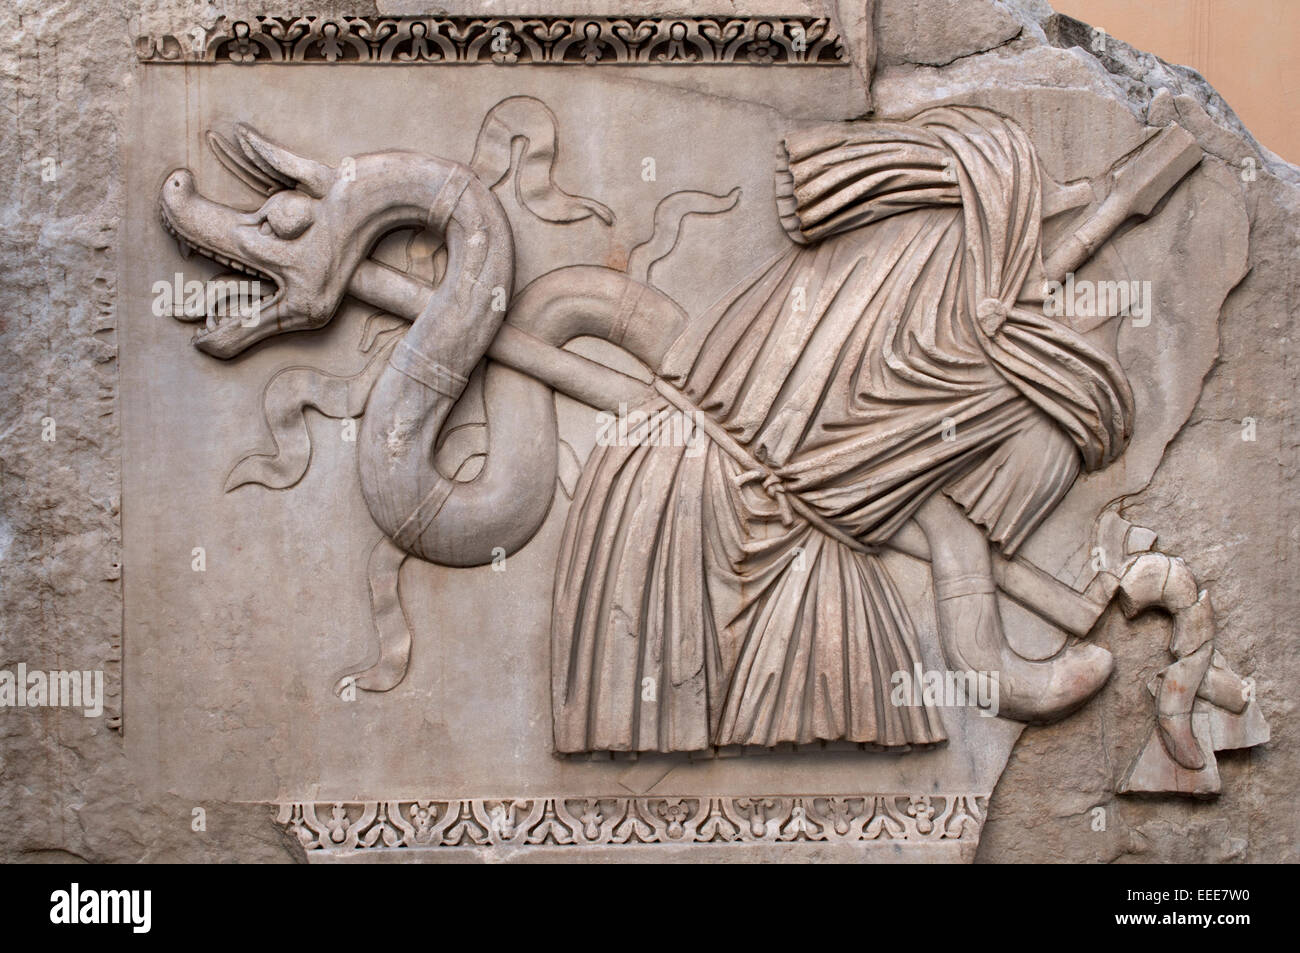 Roman relief sculpture, Palazzo dei Conservatori, Roman Rome Capitoline Museum Italy Italian Stock Photo